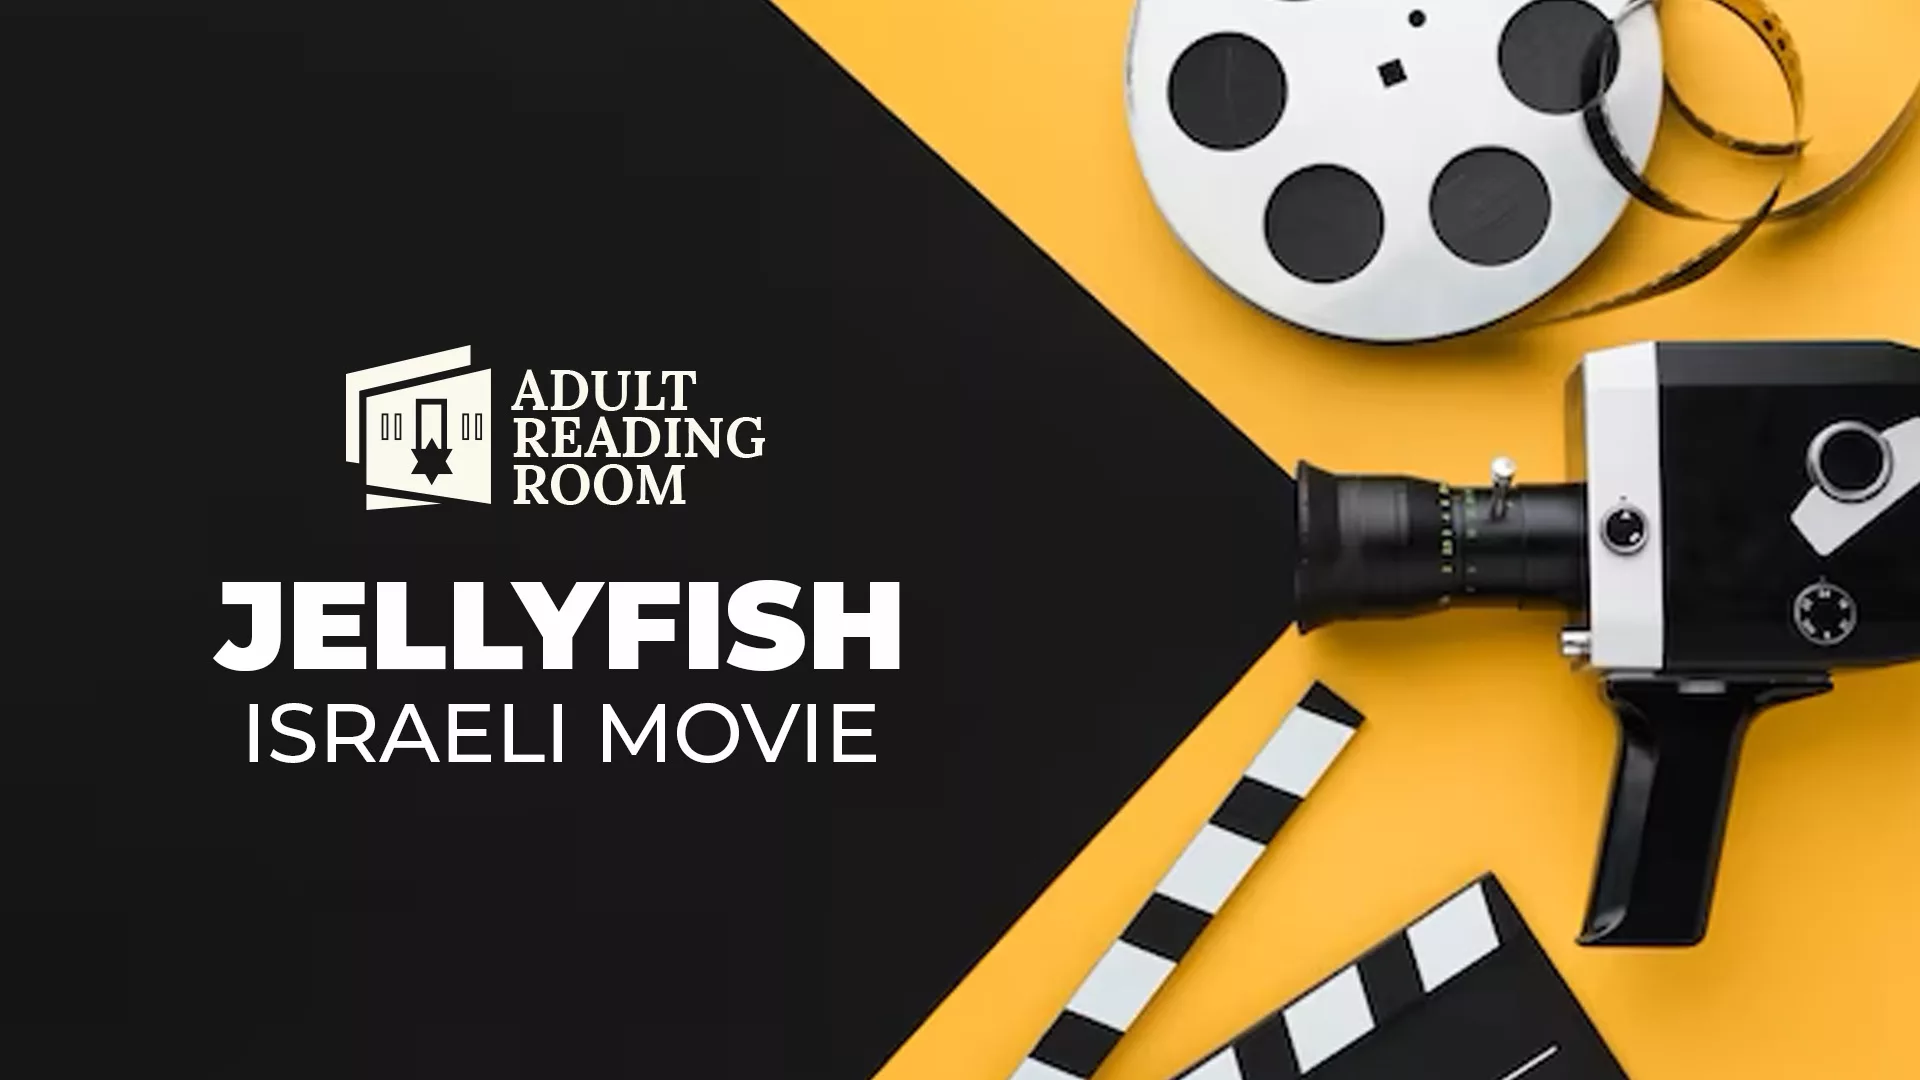 Jellyfish Movie Israeli Movie Camera Film adult reading room